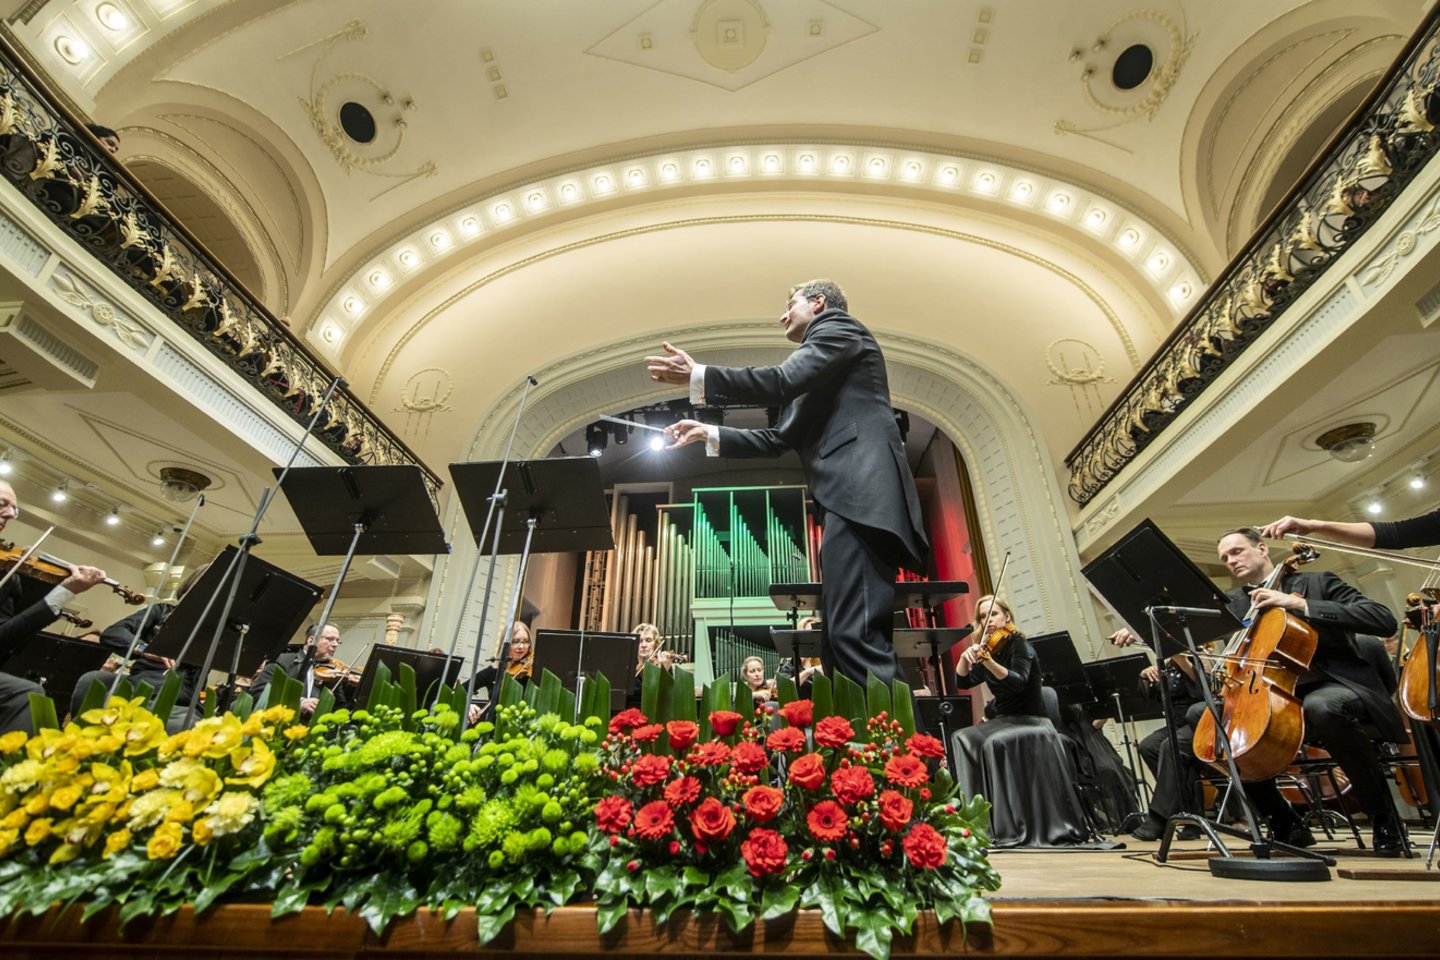  Iškilmingą Vasario 16-osios koncertą Filharmonijoje globoja Lietuvos Respublikos prezidentas G.Nausėda. <br> D.Matvejevo nuotr.